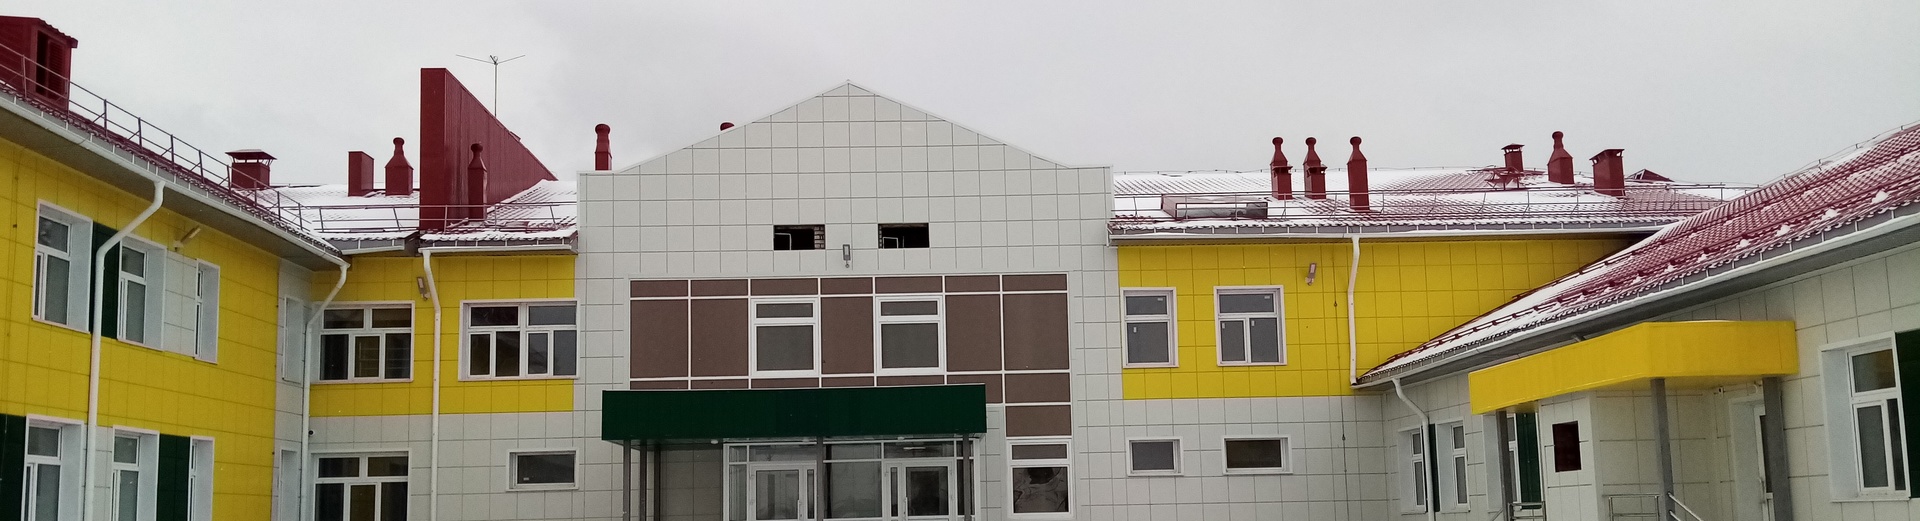 Волчихинский район, с. Усть-Волчиха, строительство средней общеобразовательной школы на 140 учащихся